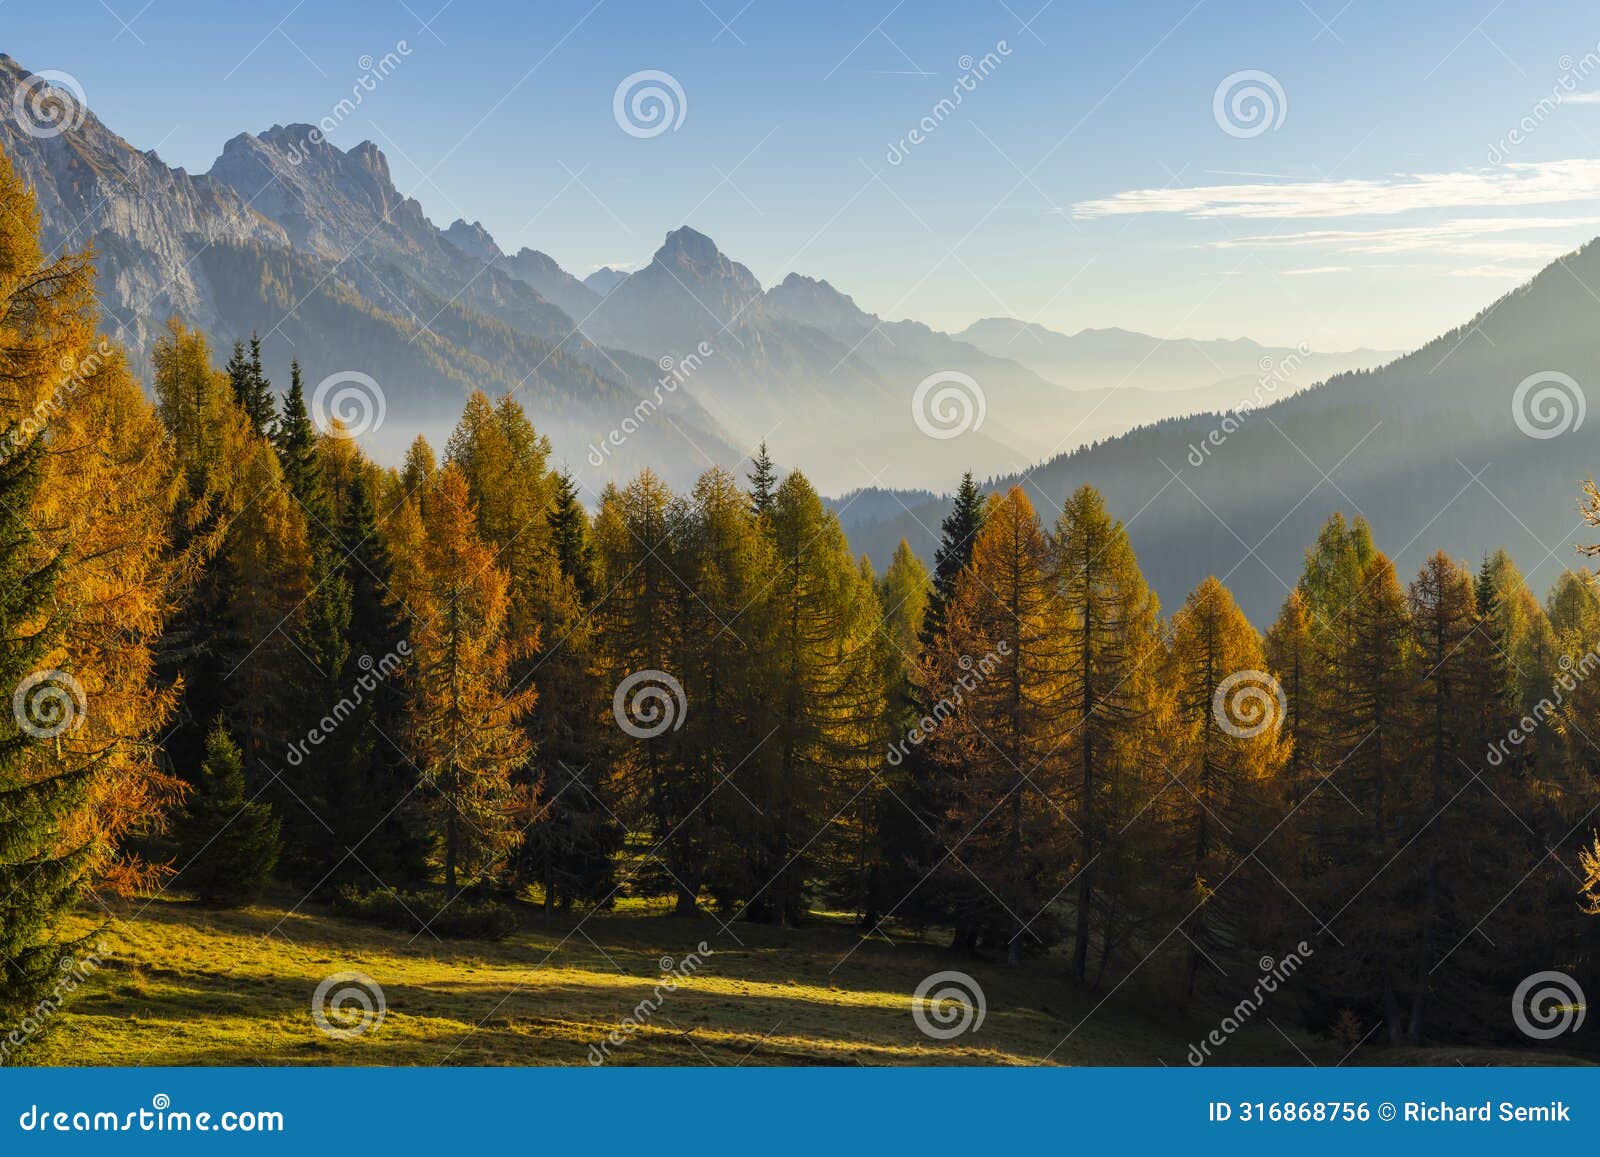 landscape near sella di razzo and sella di rioda pass, carnic alps, friuli-venezia giulia, italy